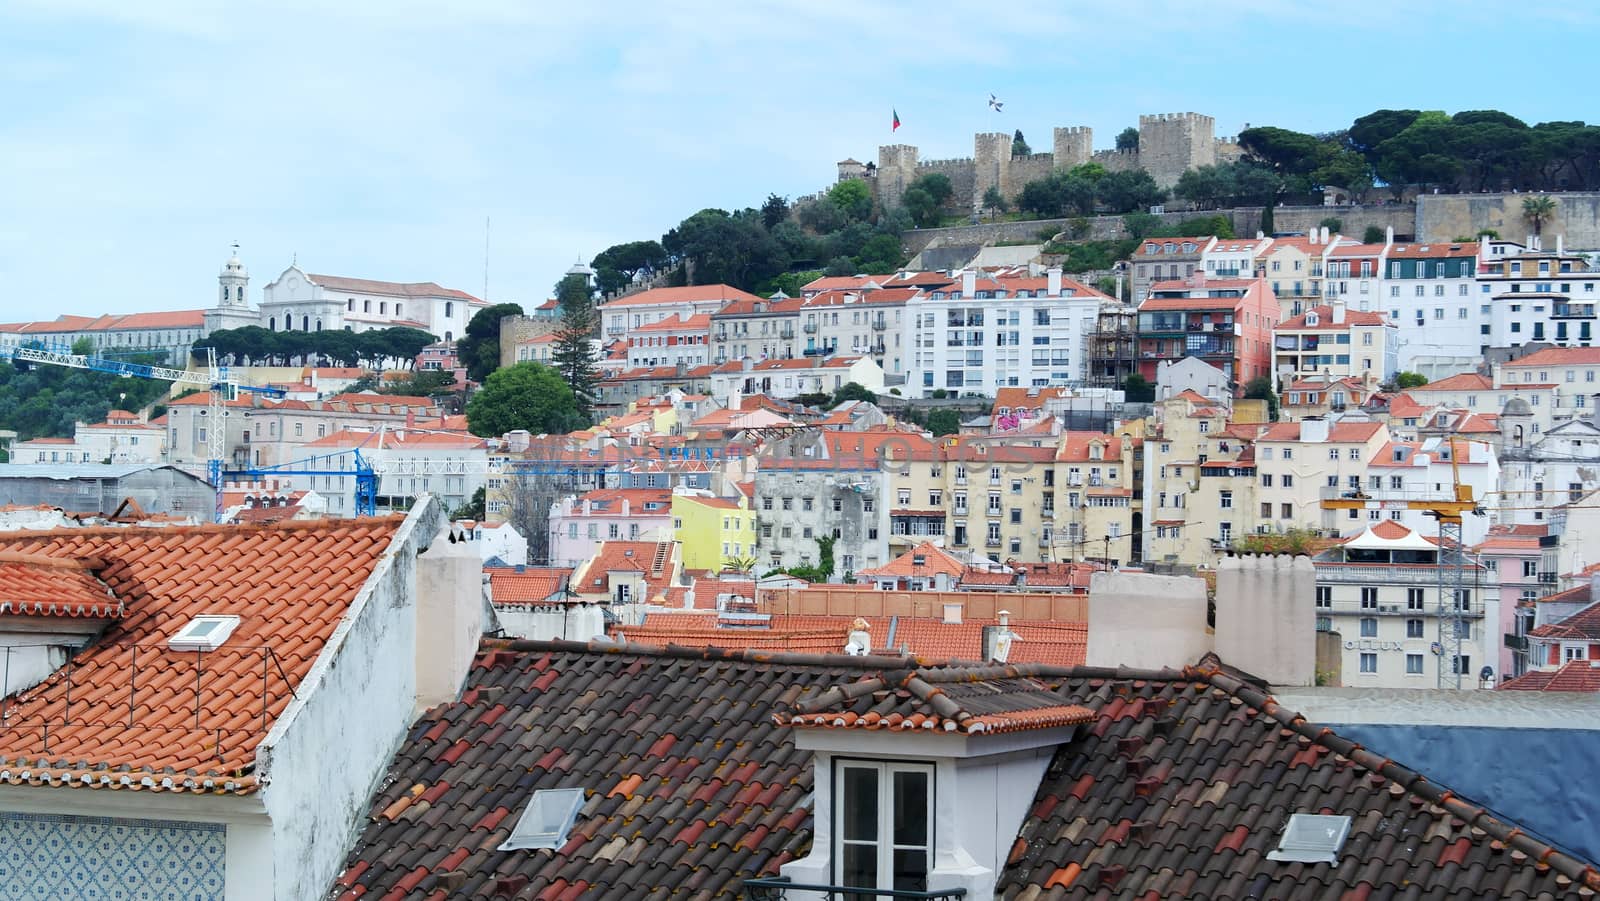 Saint George's Castle, Lisbon, Portugal